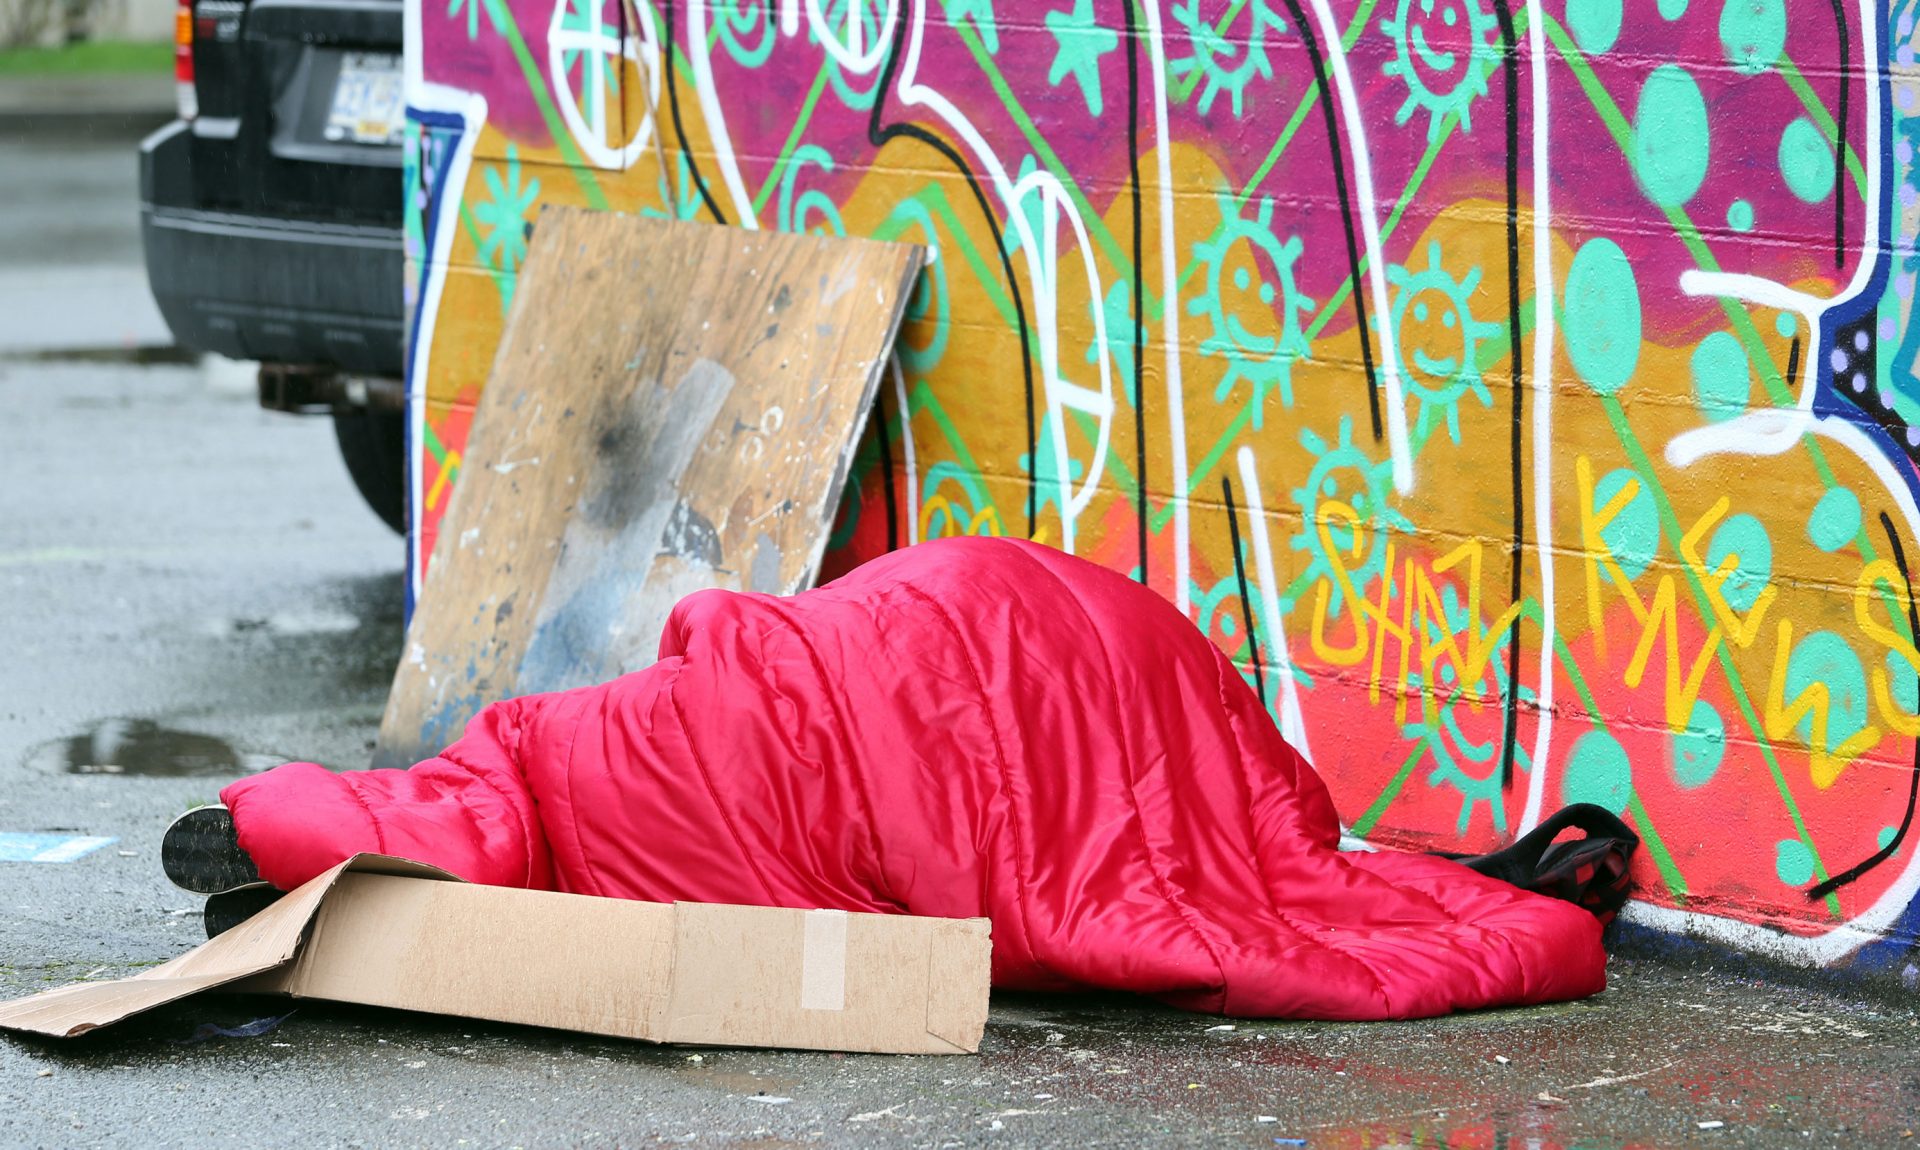 Homeless06170